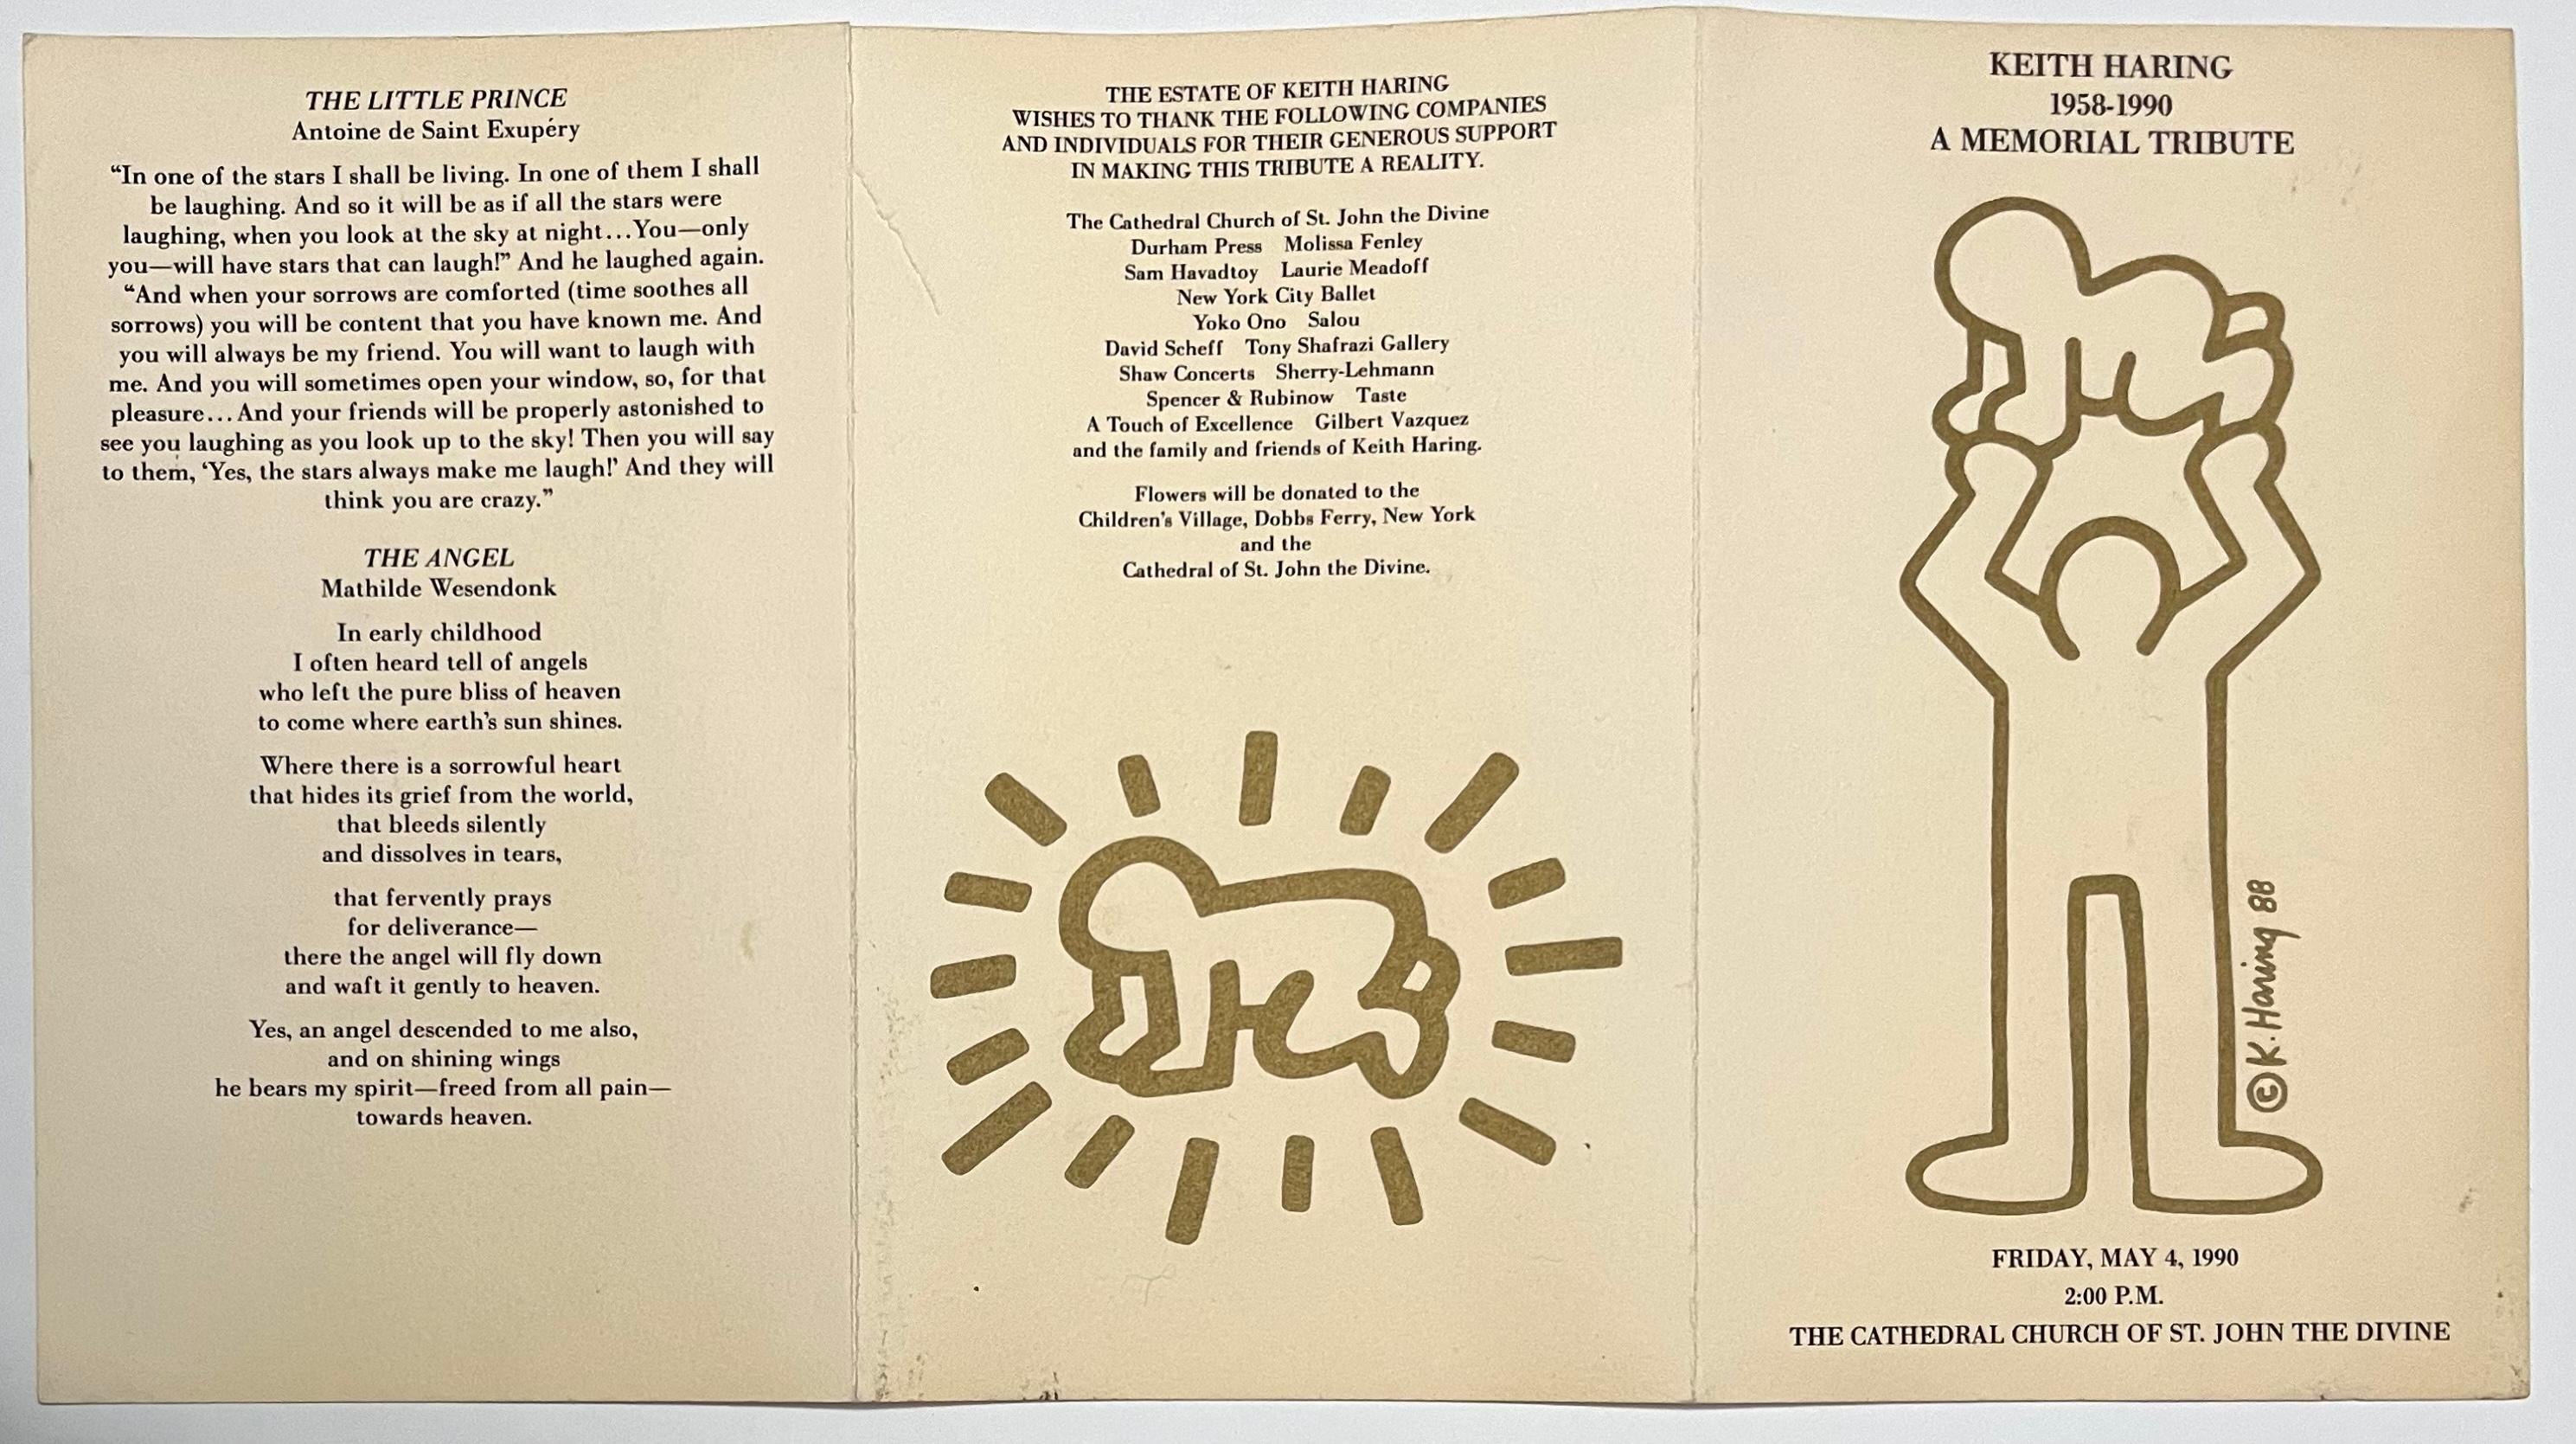 Keith Haring : un hommage à sa mémoire 1990 :
Rare programme d'invitation pliant, sérigraphié, historique, comportant une œuvre d'art recto-verso dorée - publié à l'occasion du service commémoratif de Keith Haring ; tenu le 4 mai 1990 (le jour de